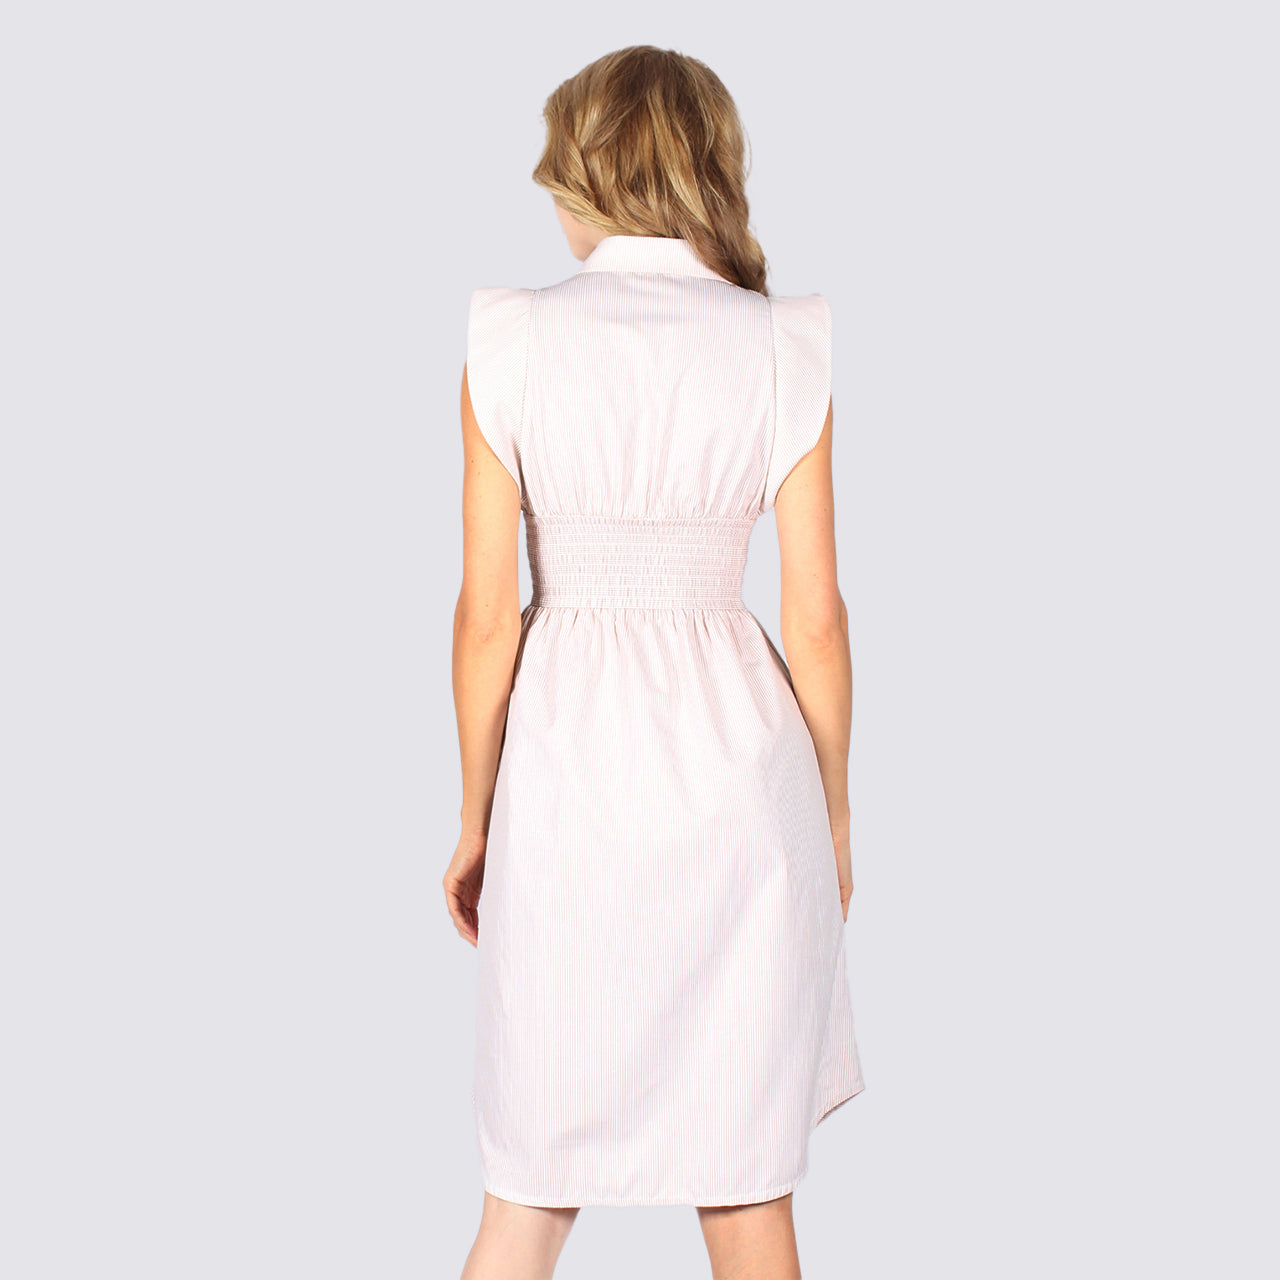 هافن أفينيو - فستان أبيض متوسط الطول